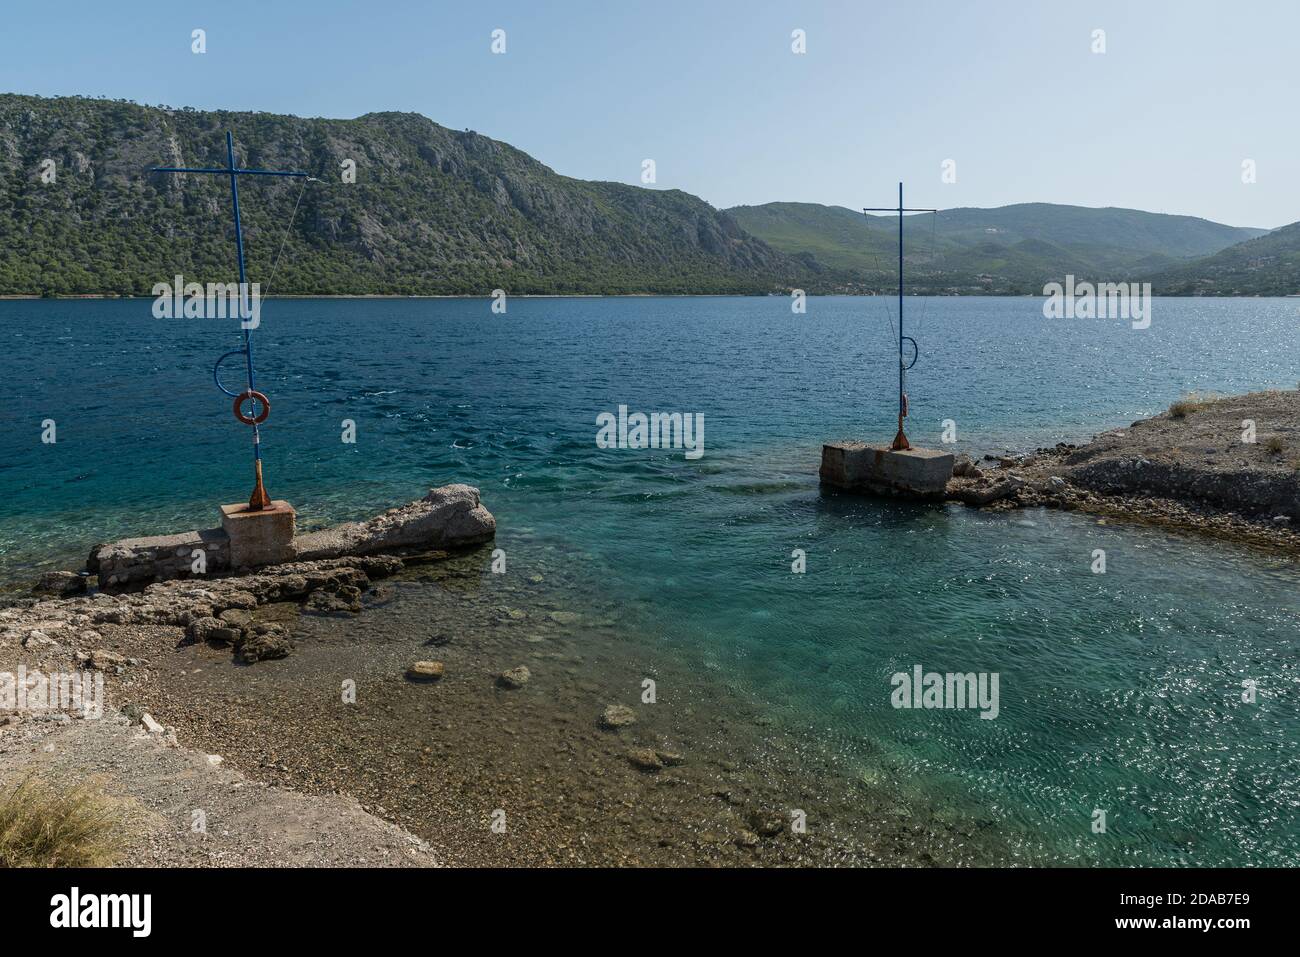 Lake Vouliagmenis - Heraion,Perachora Corinthia Greece. Stock Photo